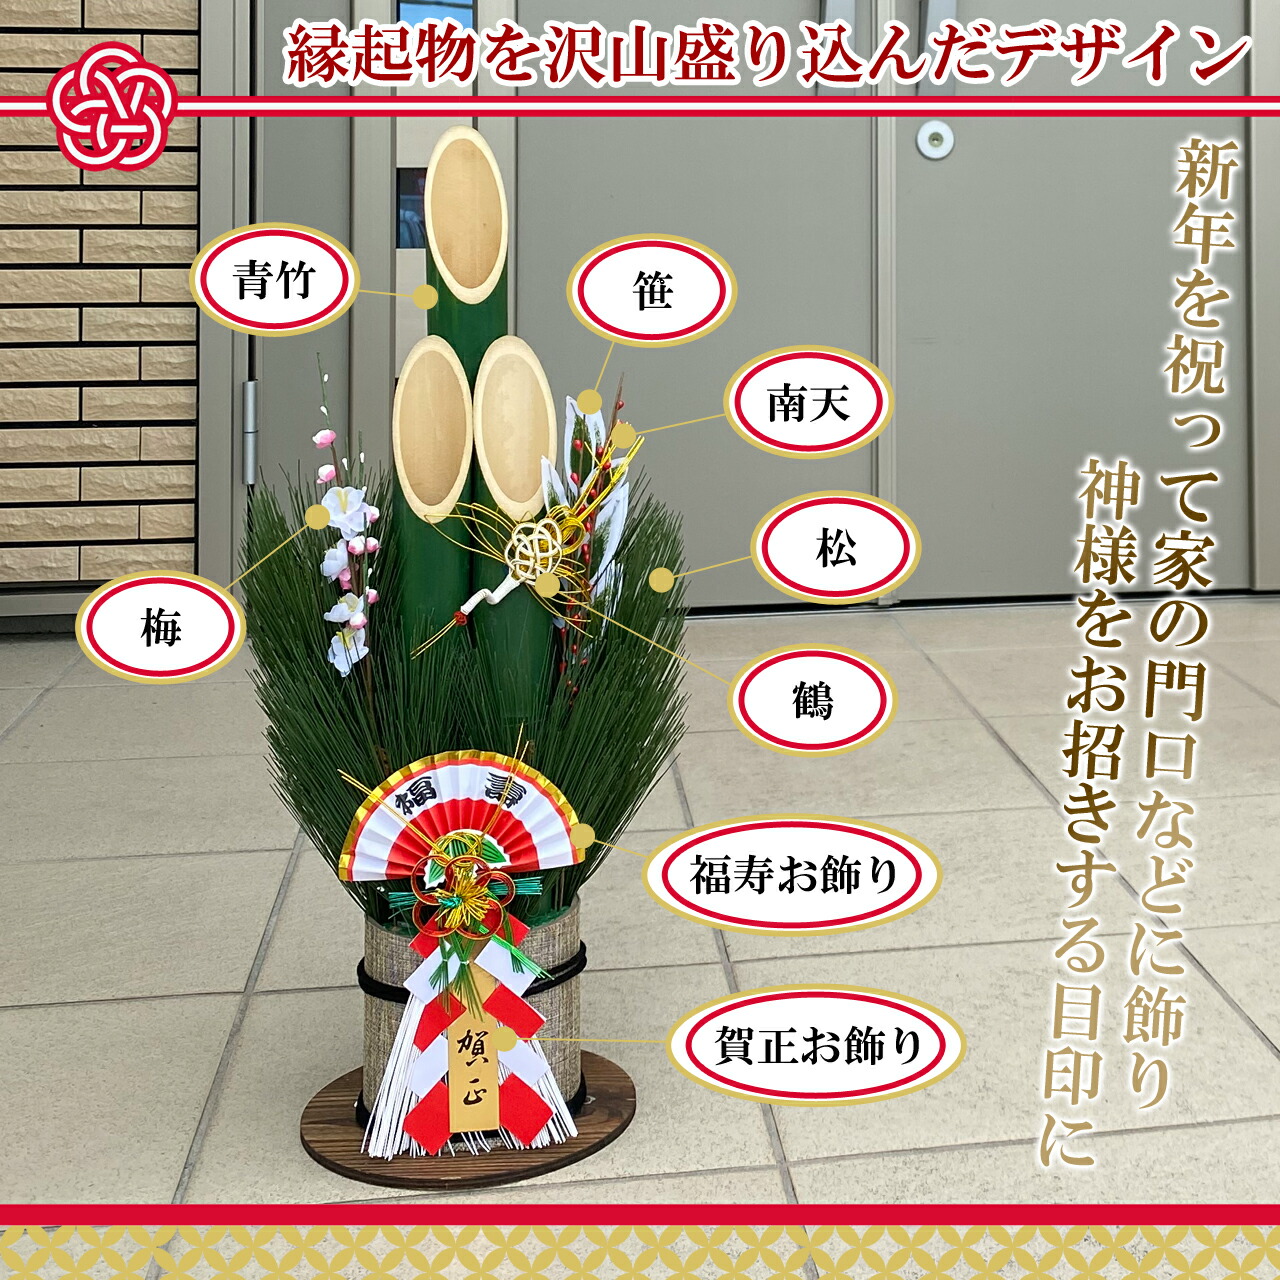 門松 60cm 一対 2本組 玄関 竹 正月 飾り 縁起物 : dg-105-x2 : 正月 